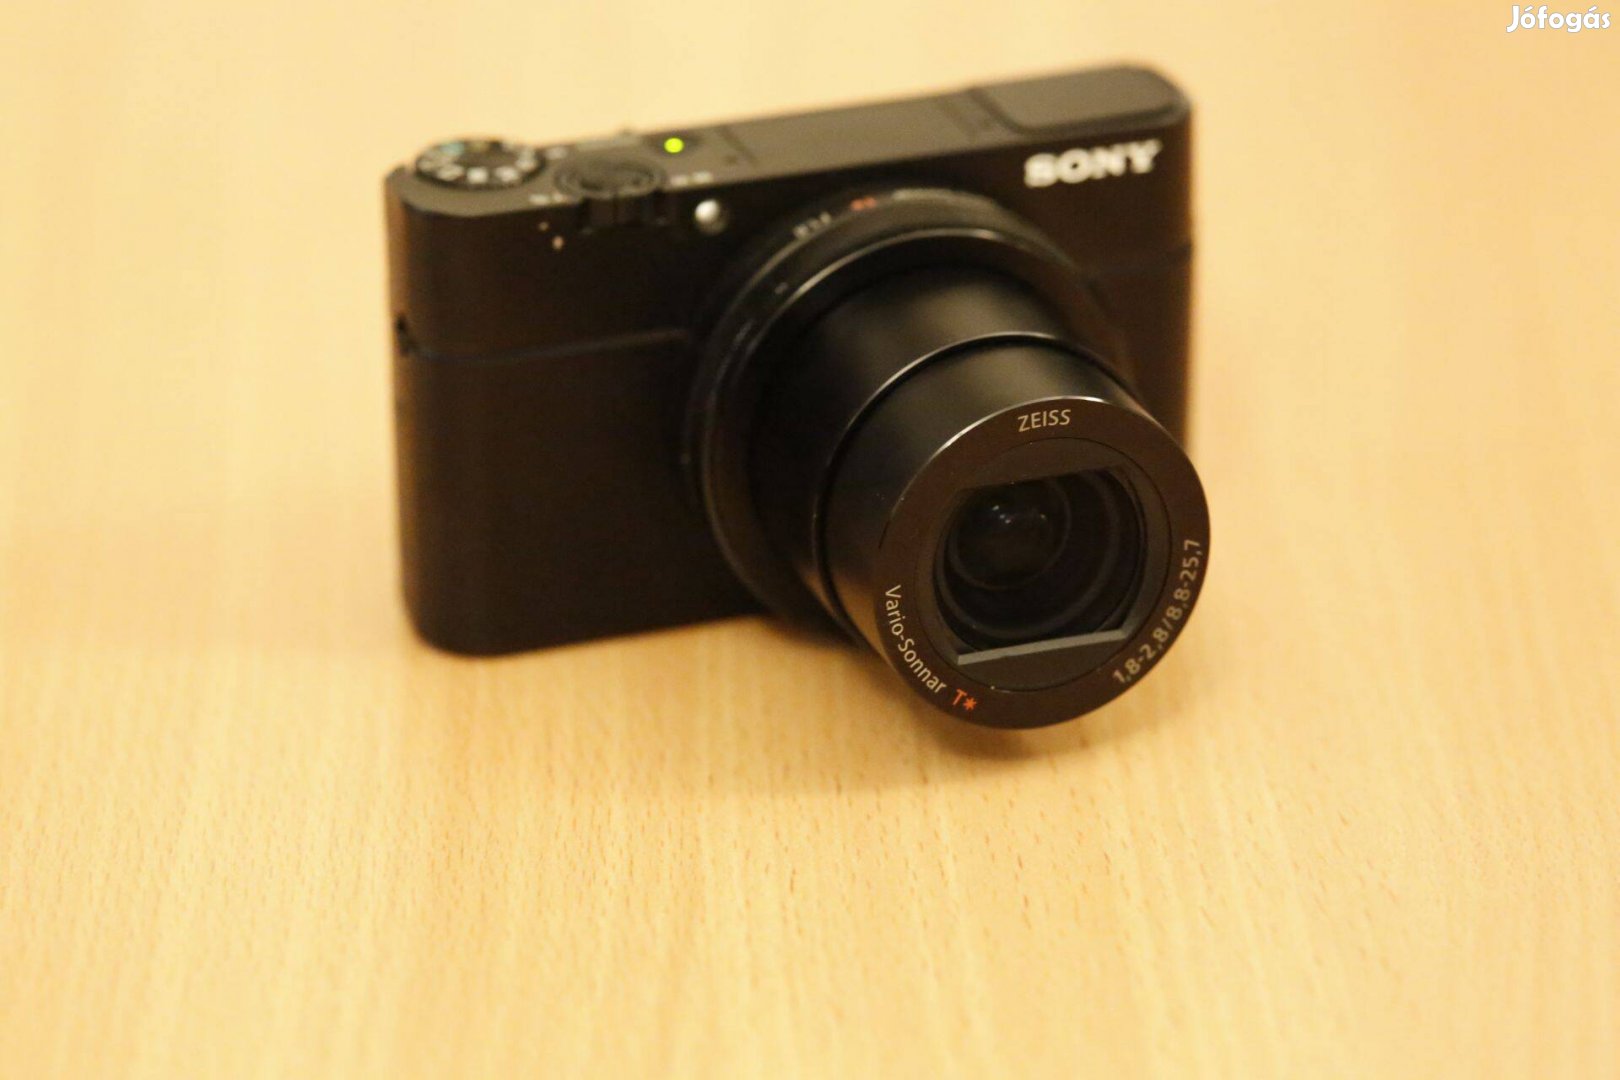 Sony RX100 mark 3